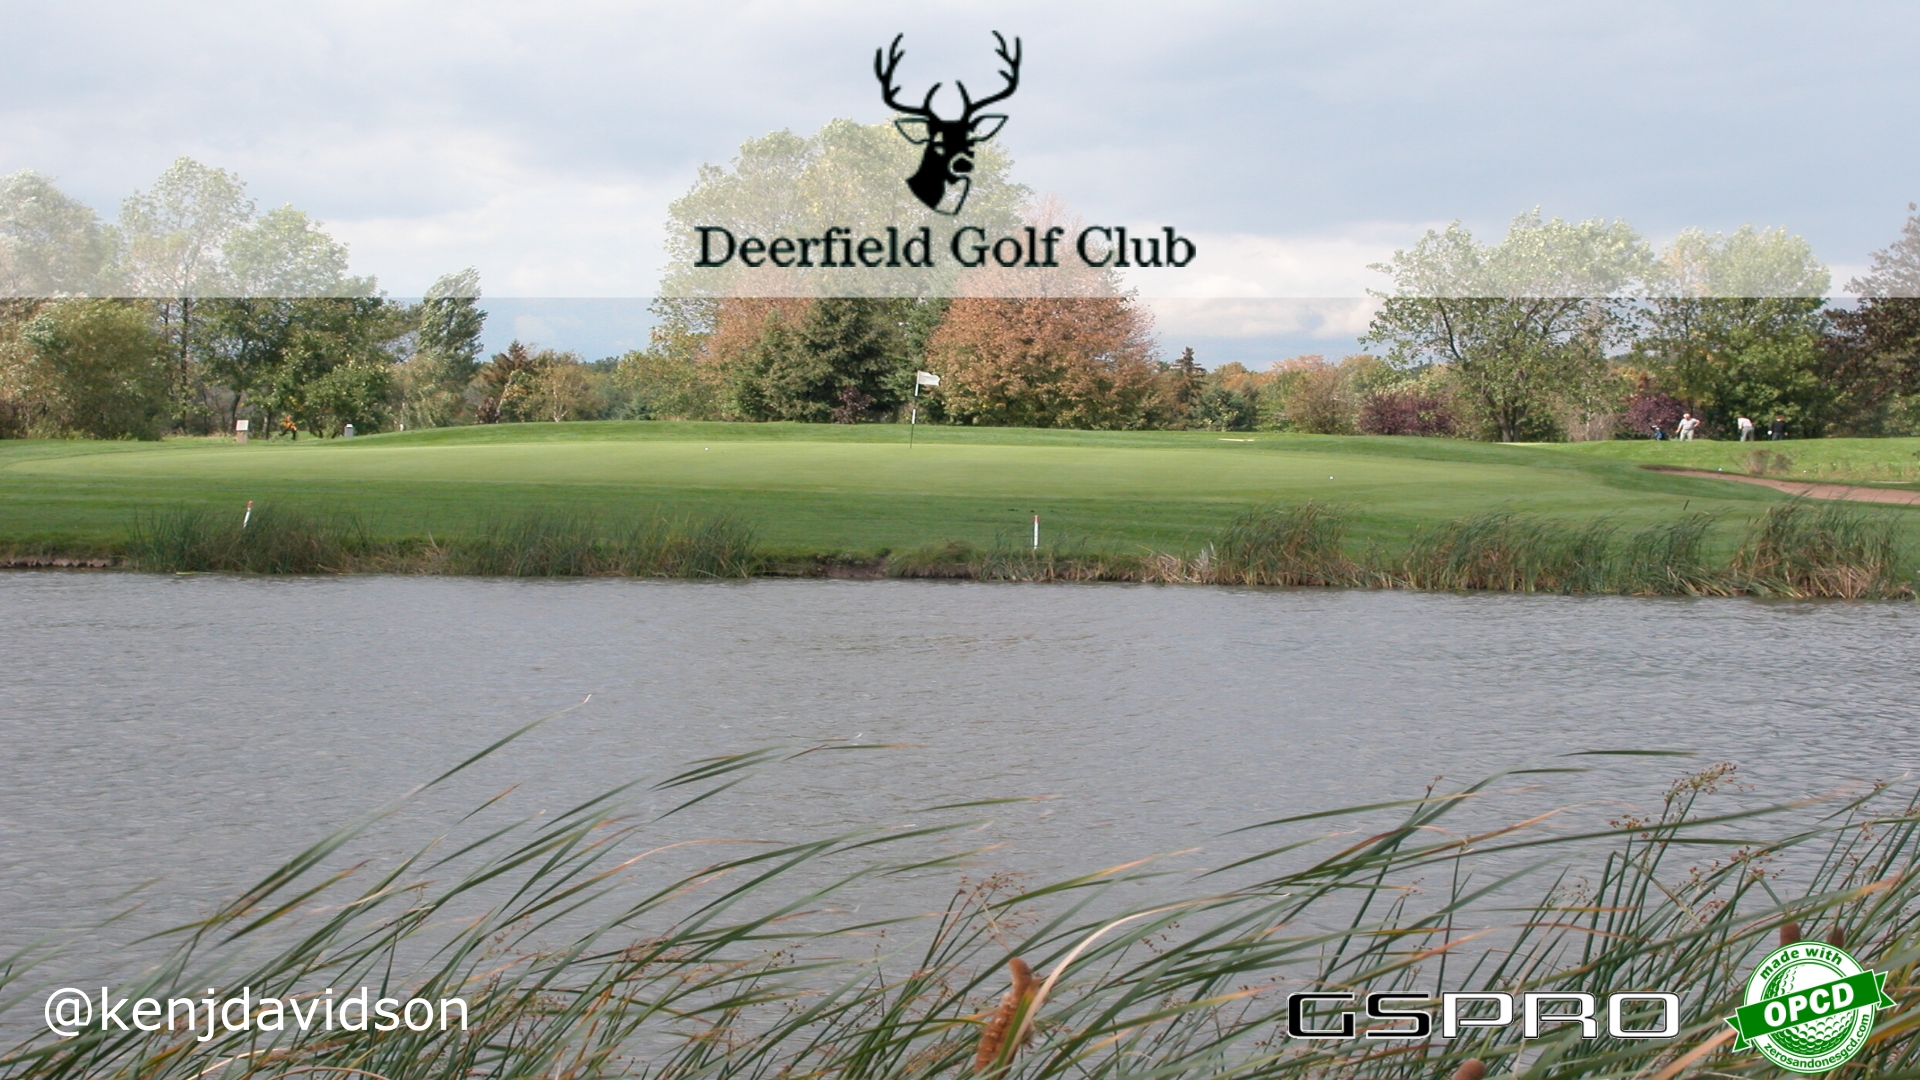 Deerfield Golf Club splash image